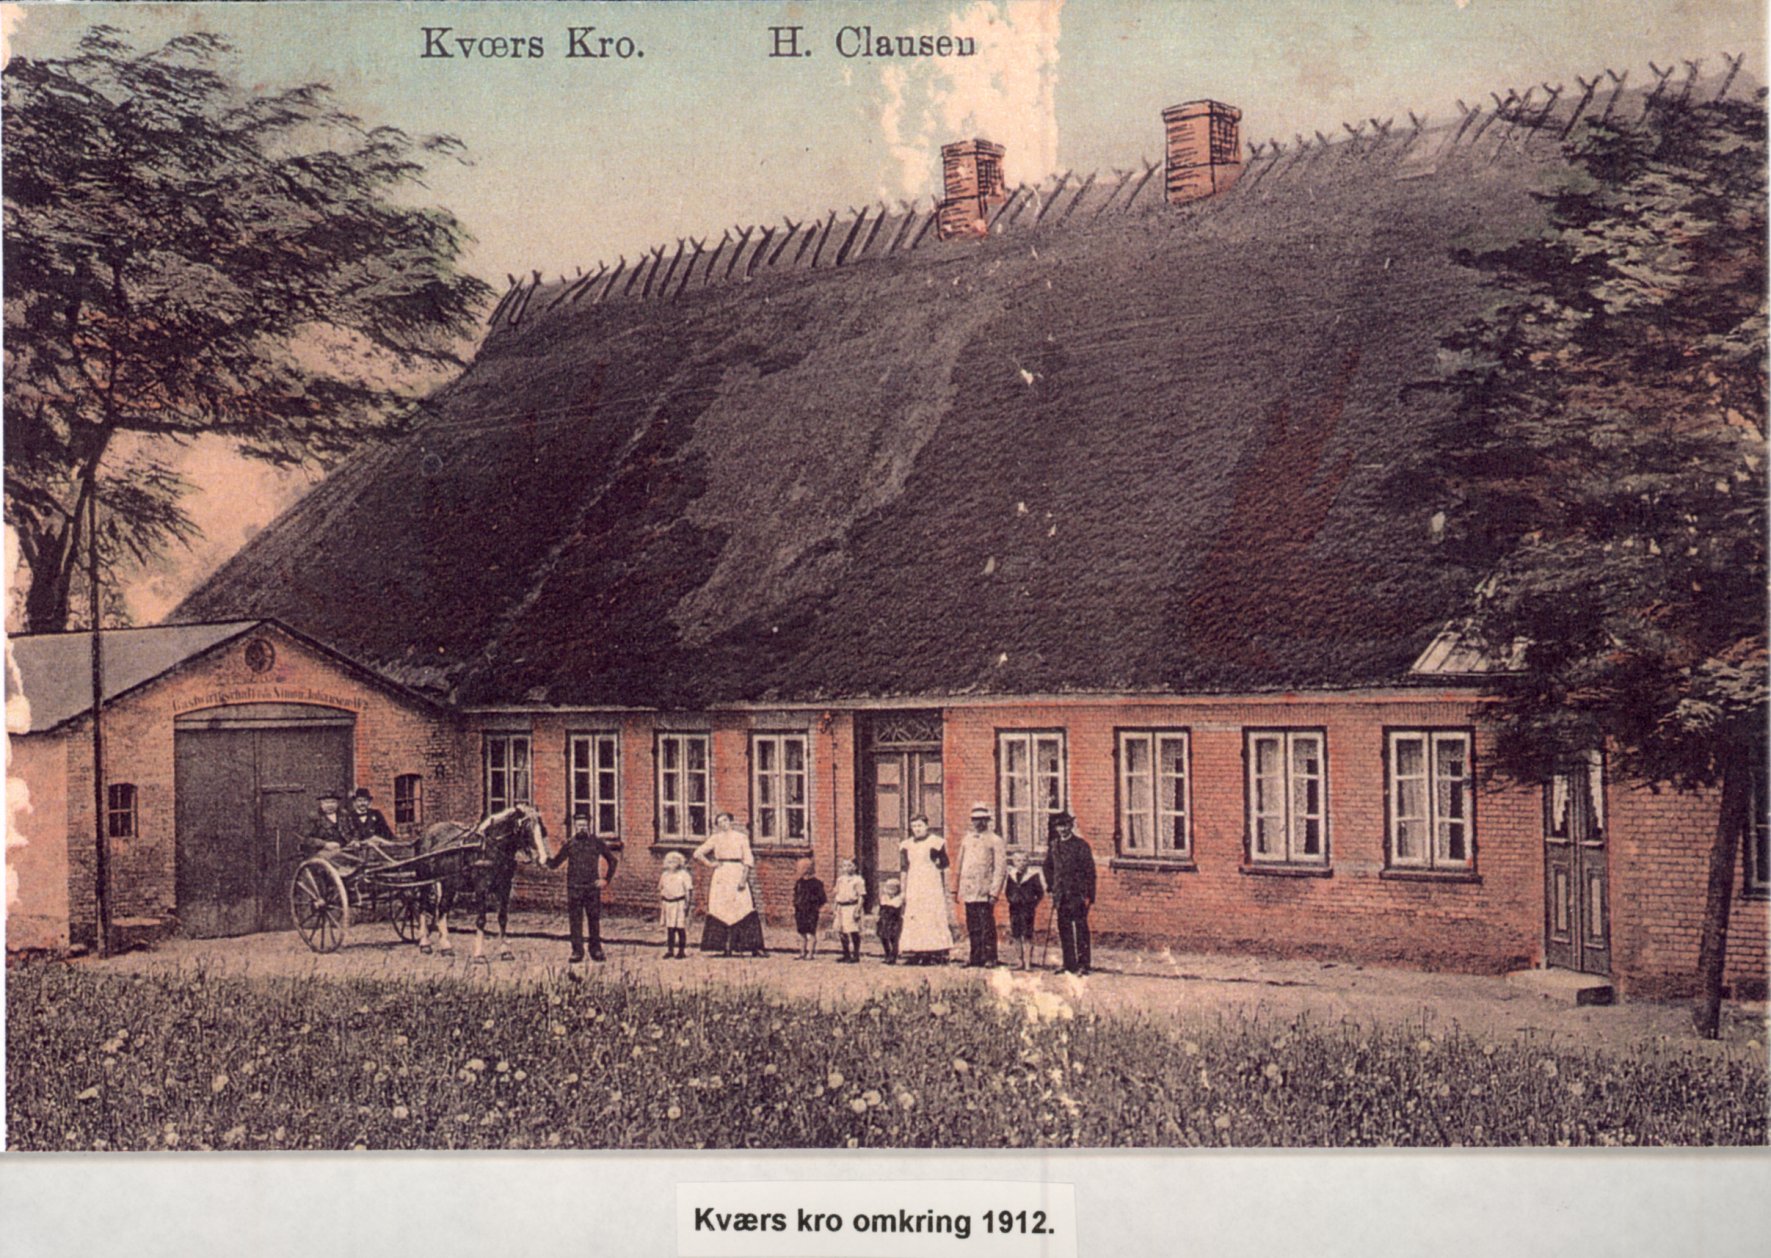 Kværs Kro ca. 1910-1915. Kroen er med stråtag, foran står adskillige personer, voksne og børn.